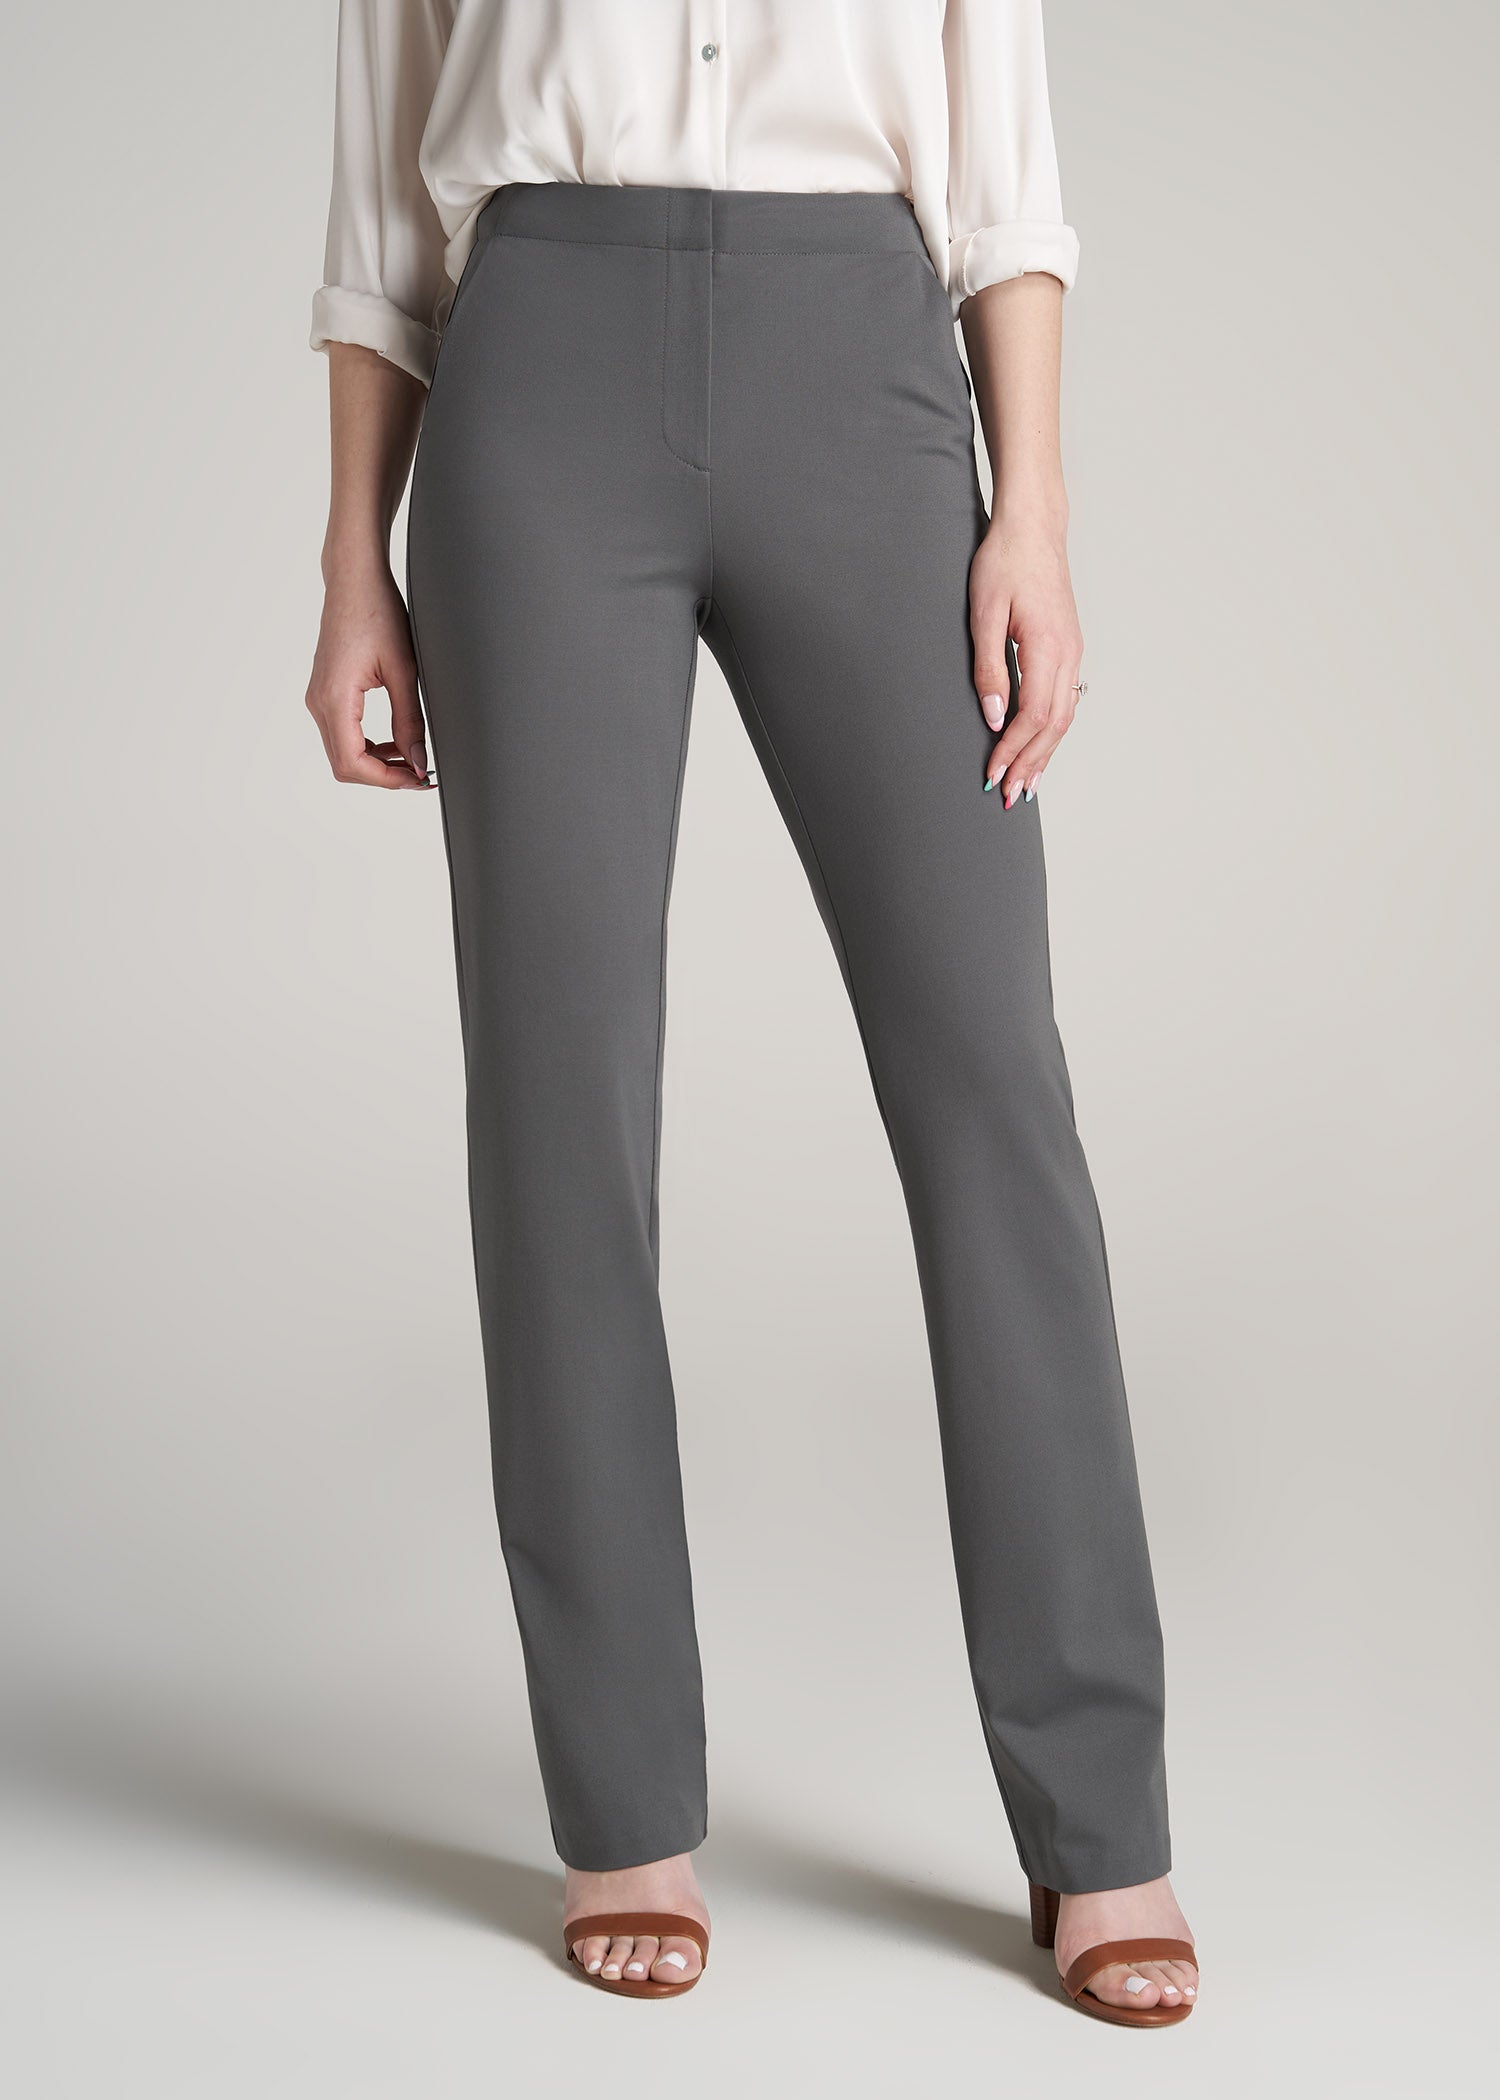 Women's Grey Dress Pants